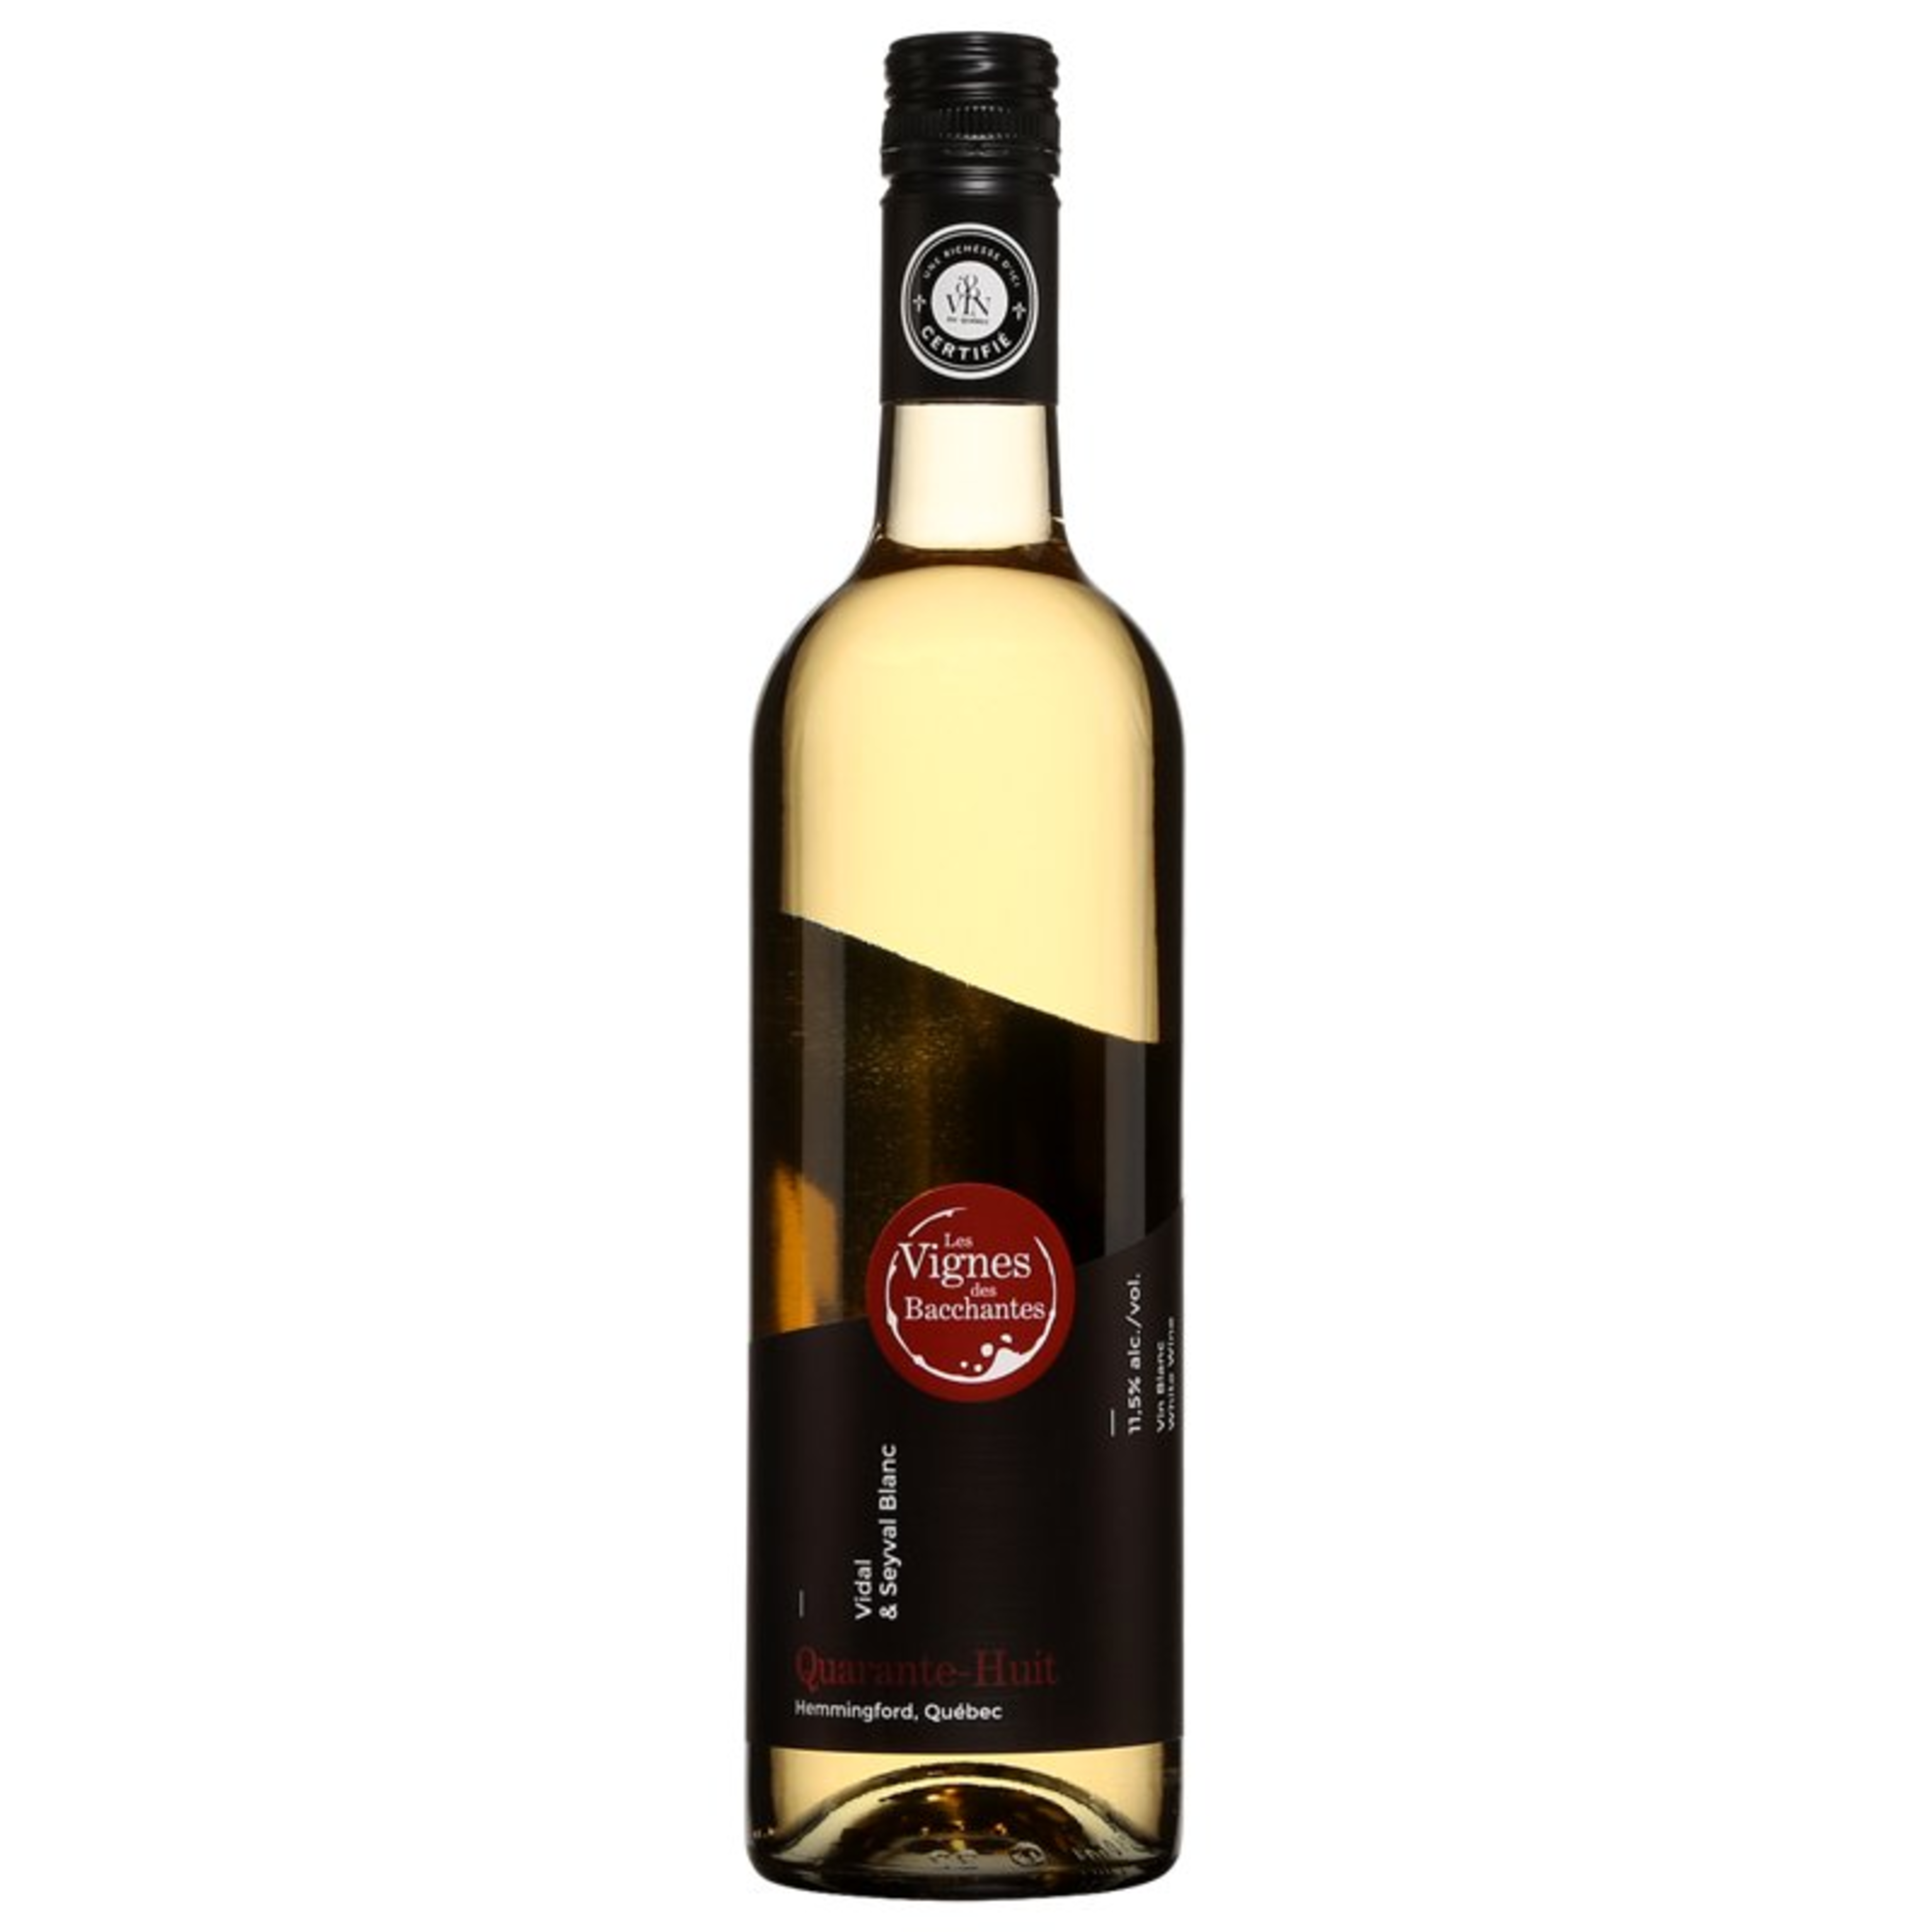 Bouteille de vin blanc Les Vignes des Bacchantes Seyval / Vidal Quarante-Huit 2017, 15,95 $.